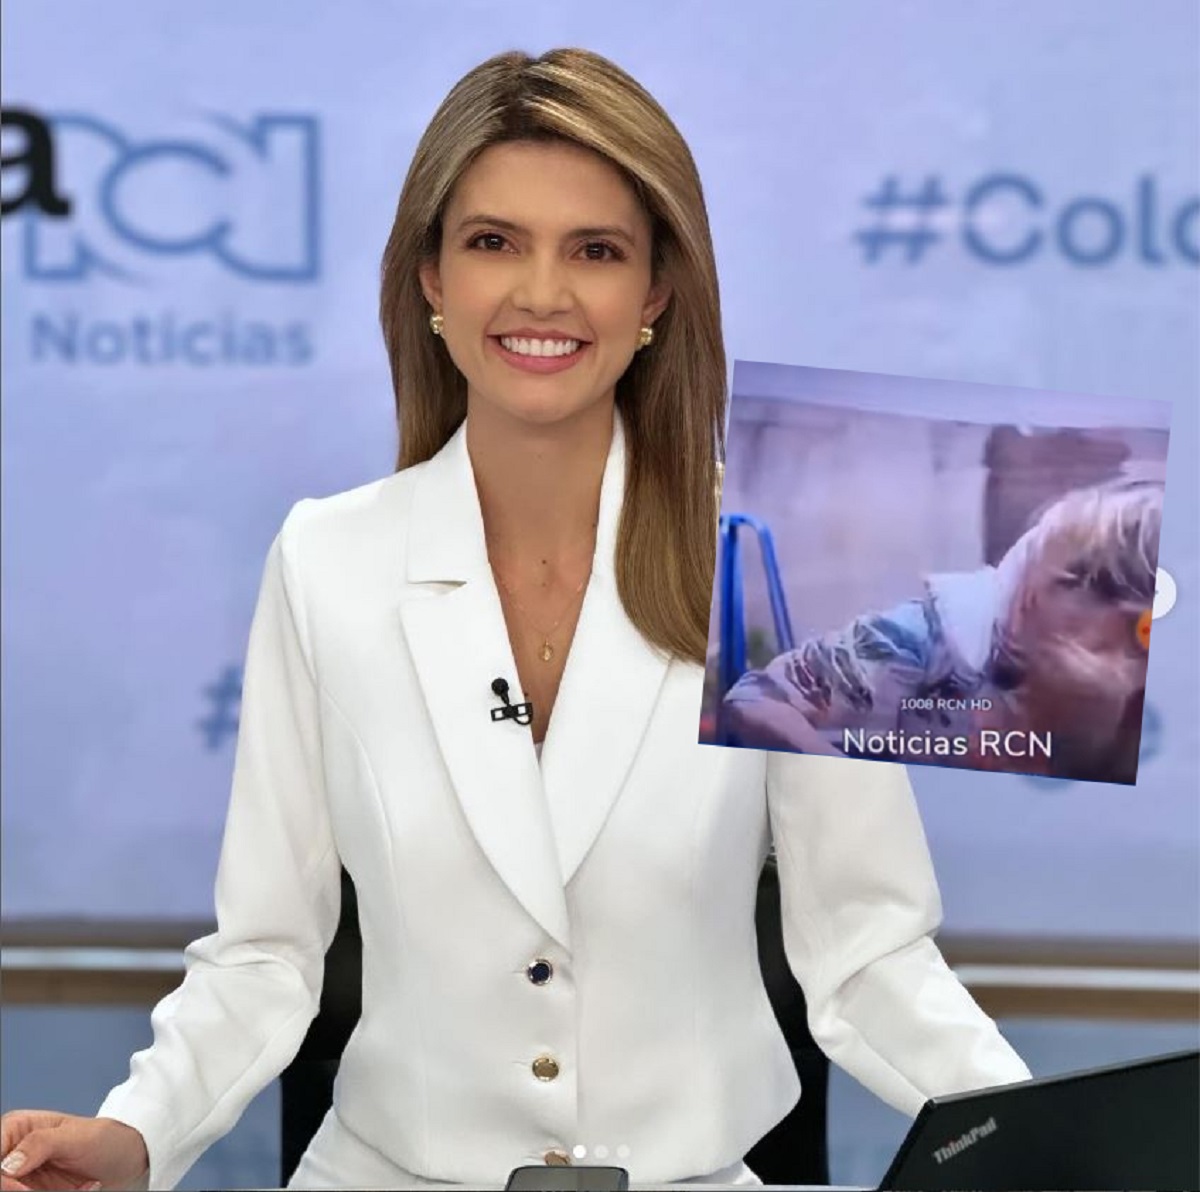 Paola Toro, presentadora de Noticias RCN, sufrió hoy, 27 de enero, un fuerte golpe en la cabeza mientras estaba en plena emisión. Le cayó una carpa.